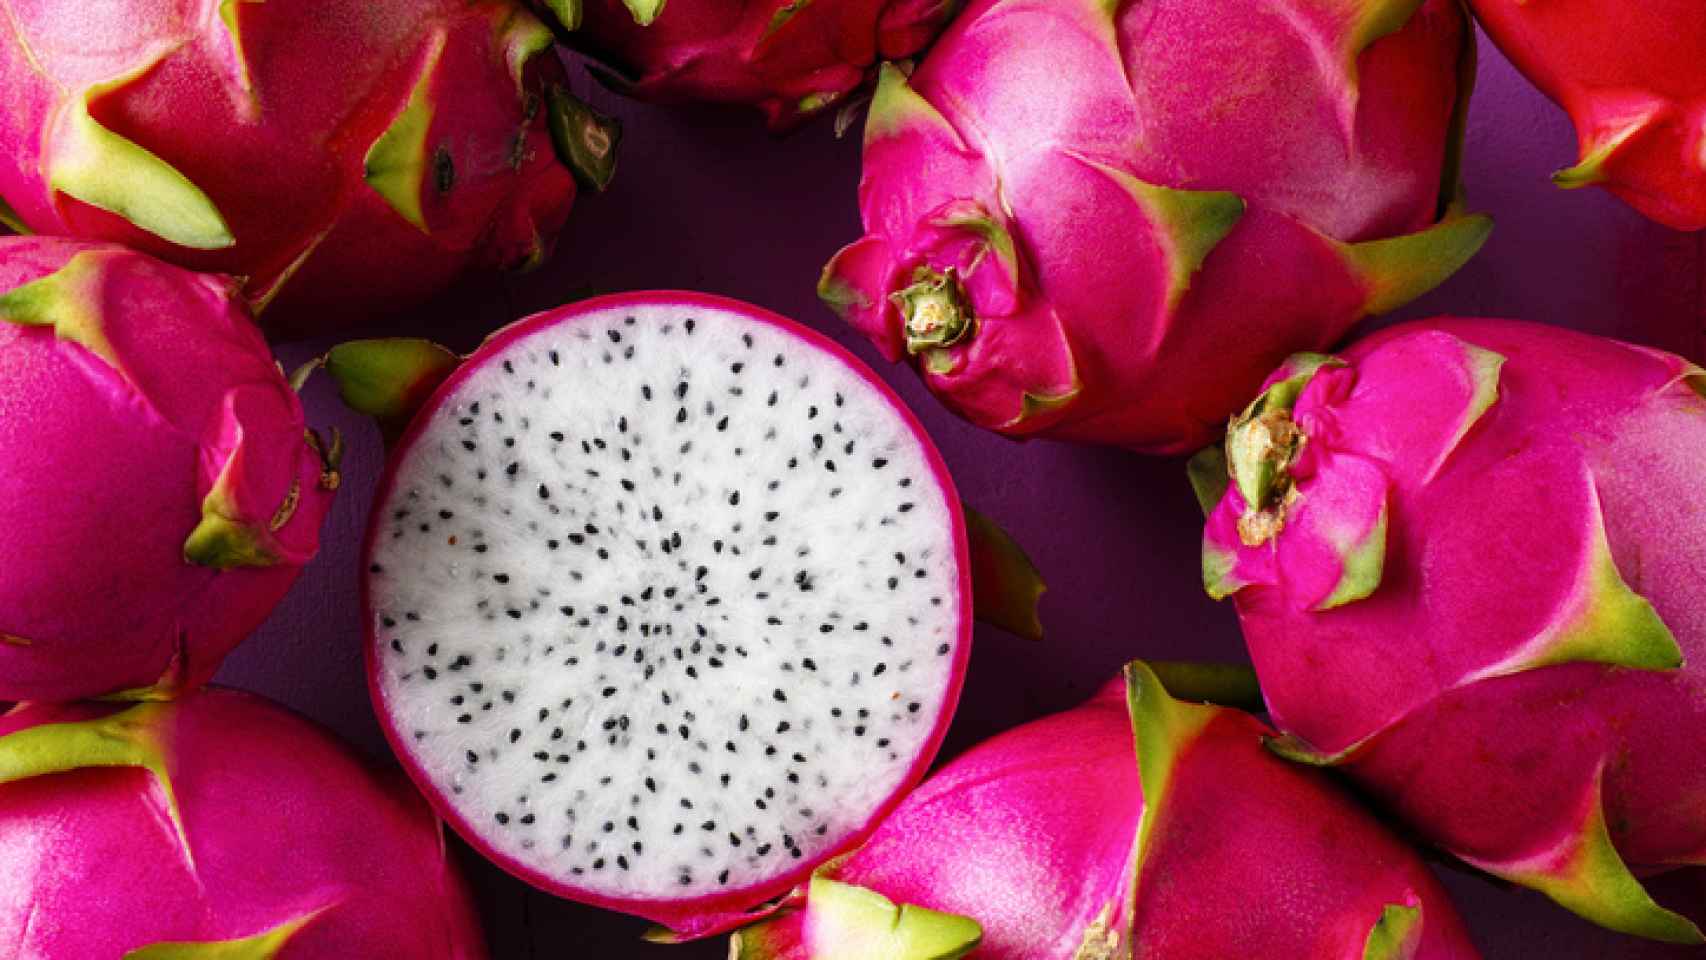 La pitaya es una fruta exótica que ha adquirido popularidad en los últimos tiempos.